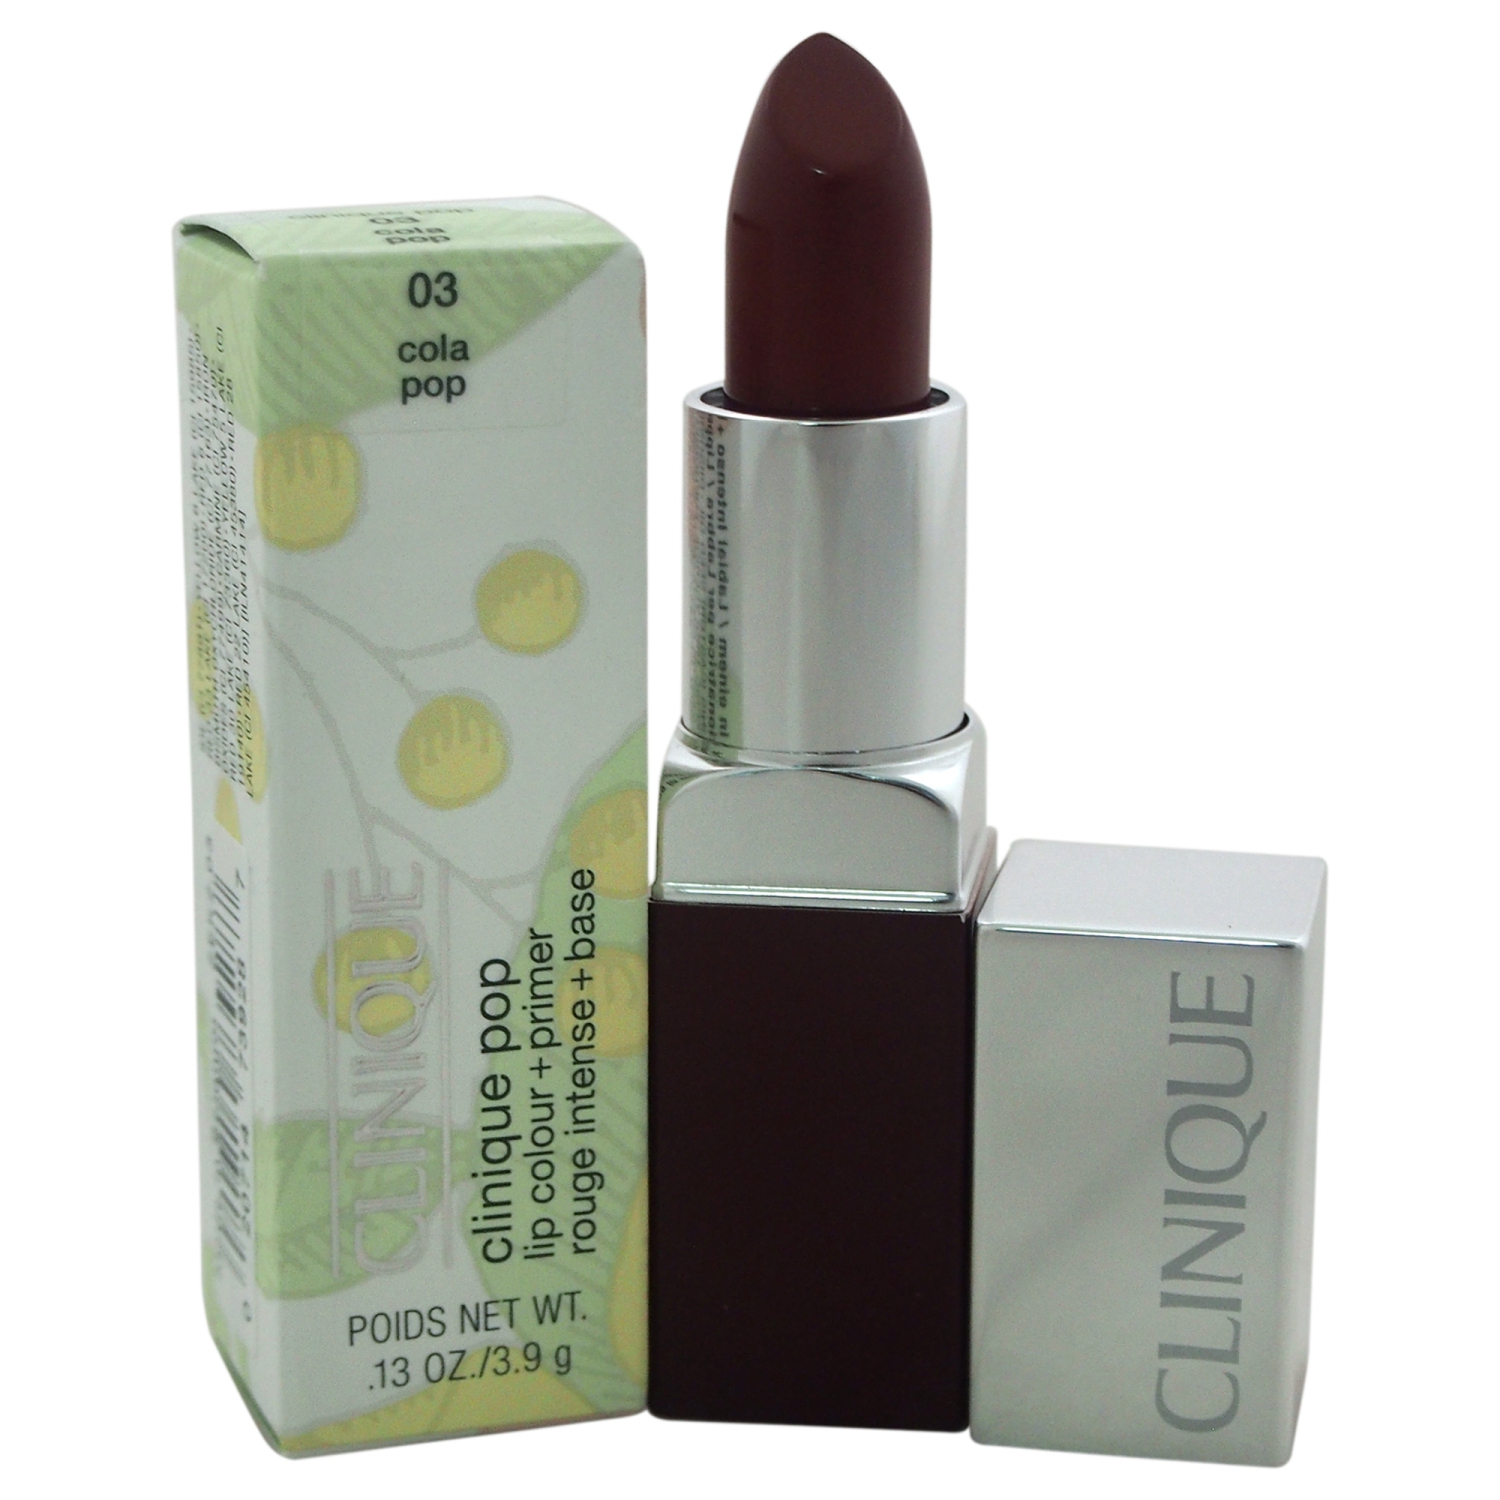 Clinique Pop Lip Colour + Primer - # 03 Cola Pop by Clinique for Women - 0.13 oz Lipstick